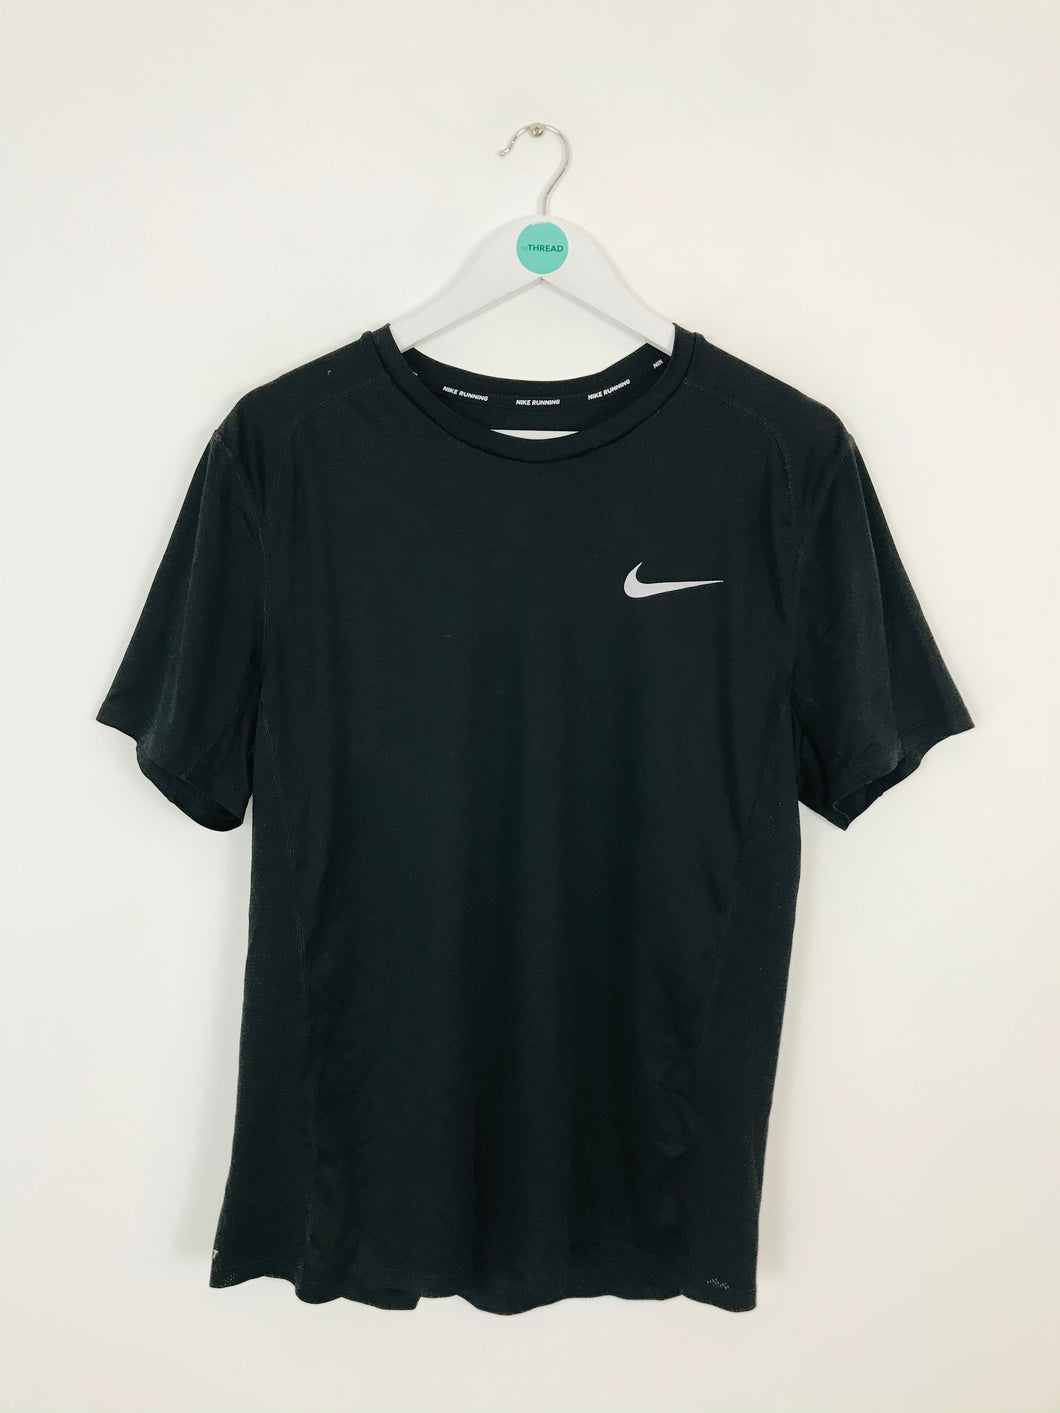 Nike Men’s Dri Fit Sports Running Top T-Shirt | L | Black